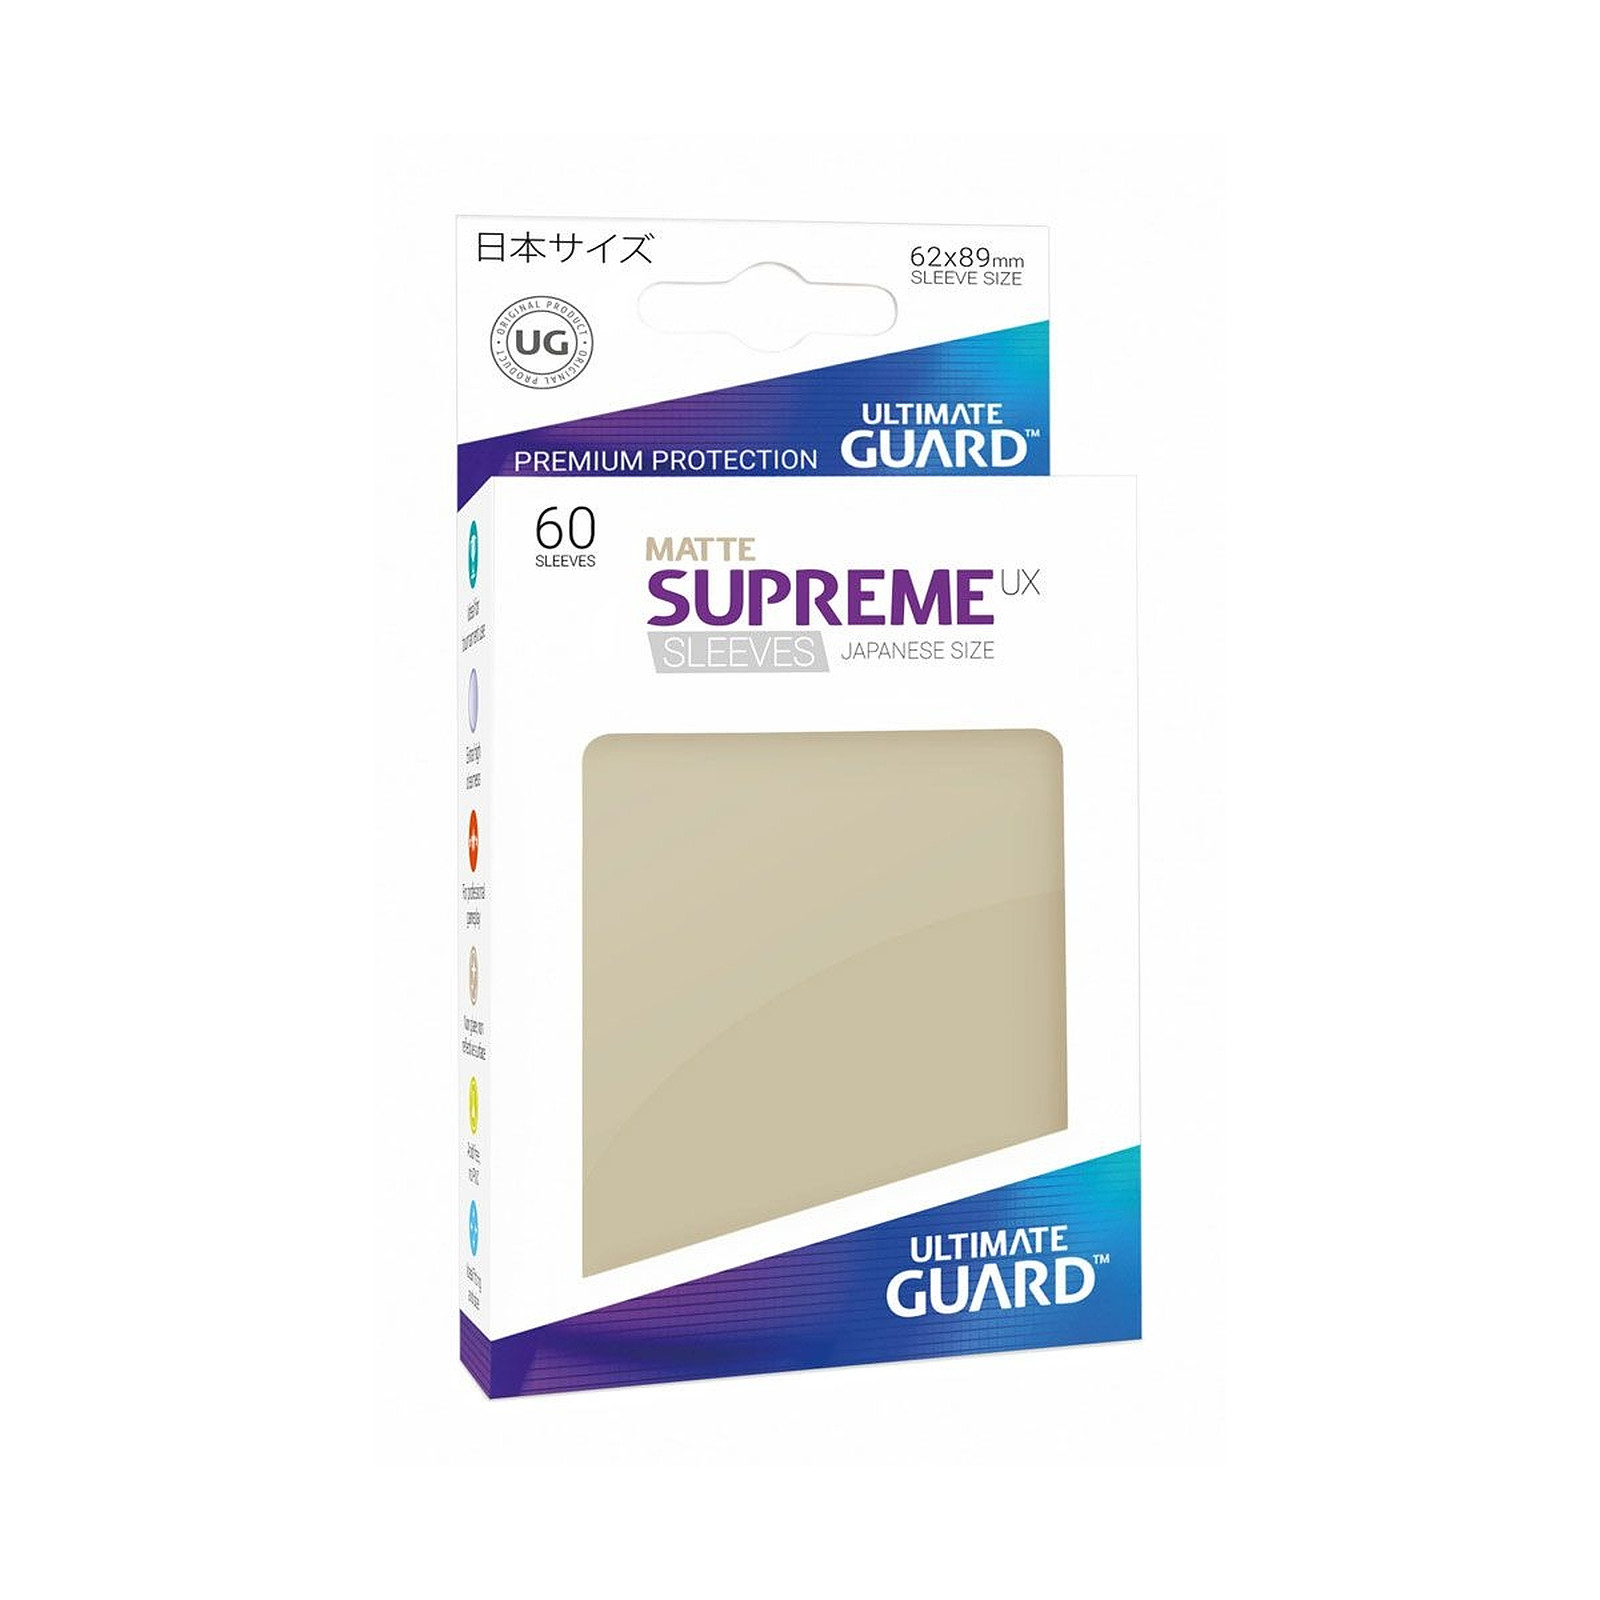 Ultimate Guard - 60 pochettes Supreme UX Sleeves format japonais Sable Mat - Accessoire jeux Ultimate Guard